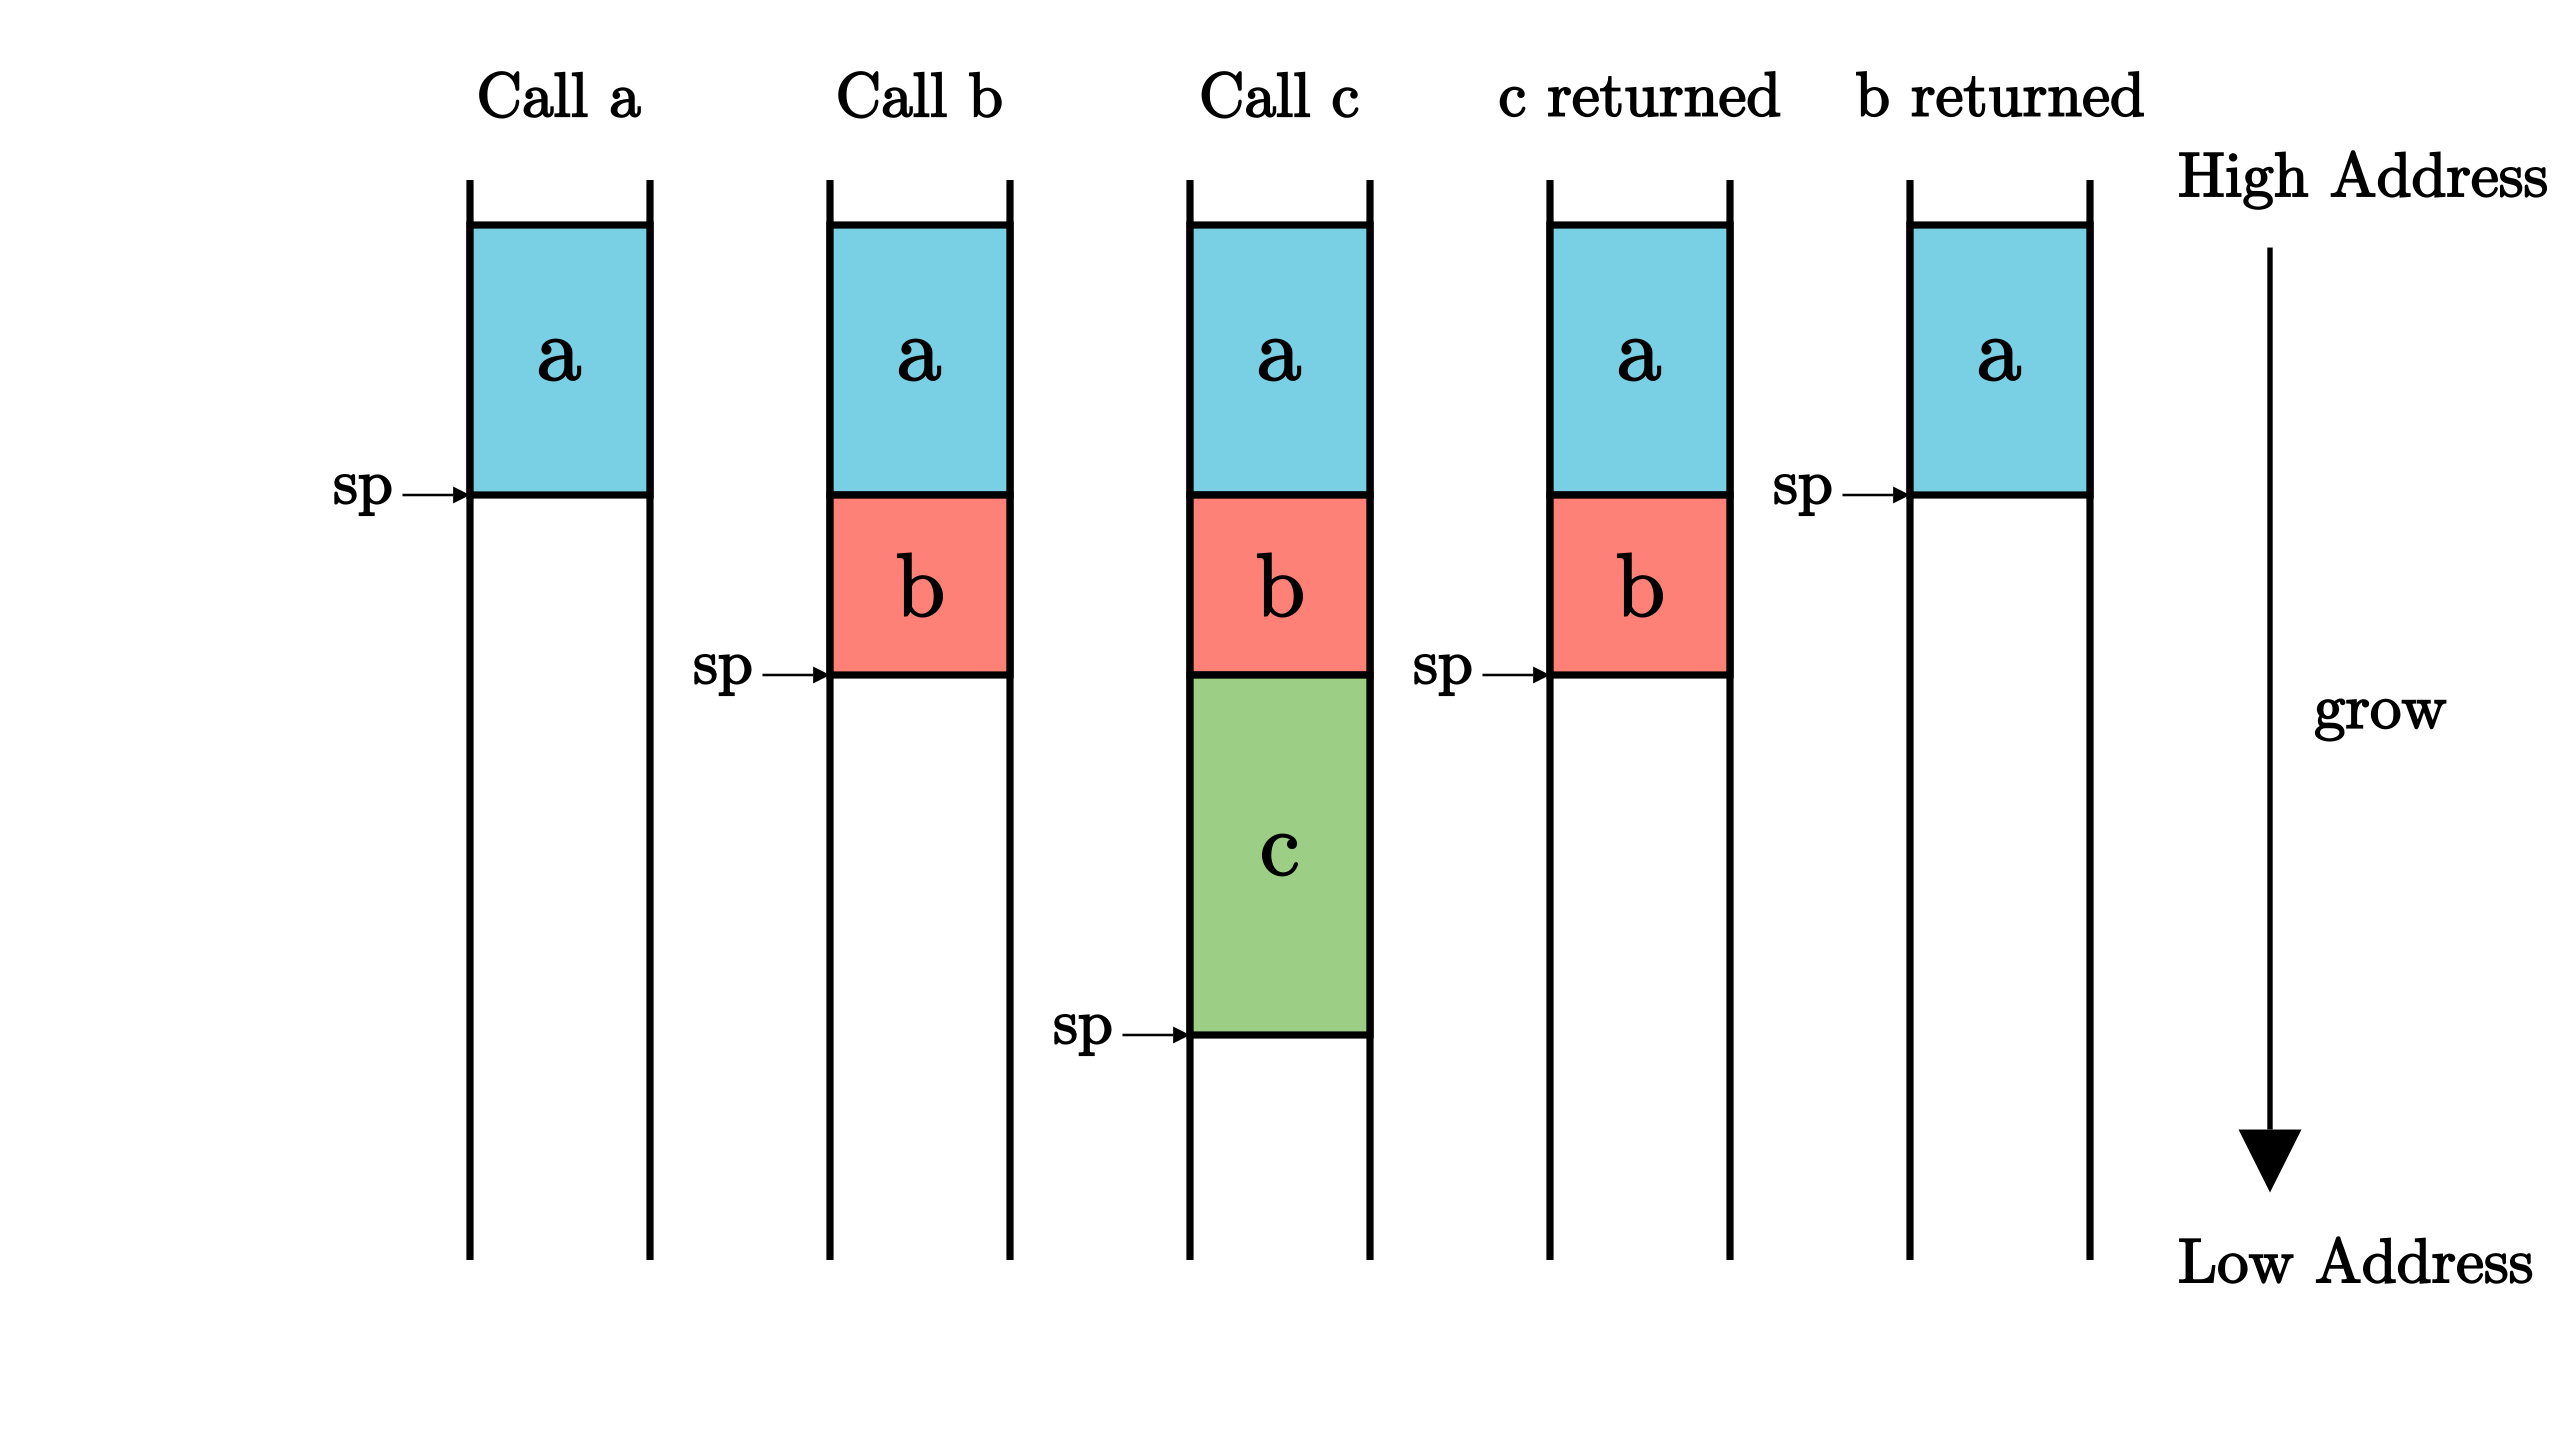 函数调用与栈帧：如图所示，我们能够看到在程序依次调用 a、调用 b、调用 c、c 返回、b 返回整个过程中栈帧的分配/回收以及 sp 寄存器的变化。 图中标有 a/b/c 的块分别代表函数 a/b/c 的栈帧。